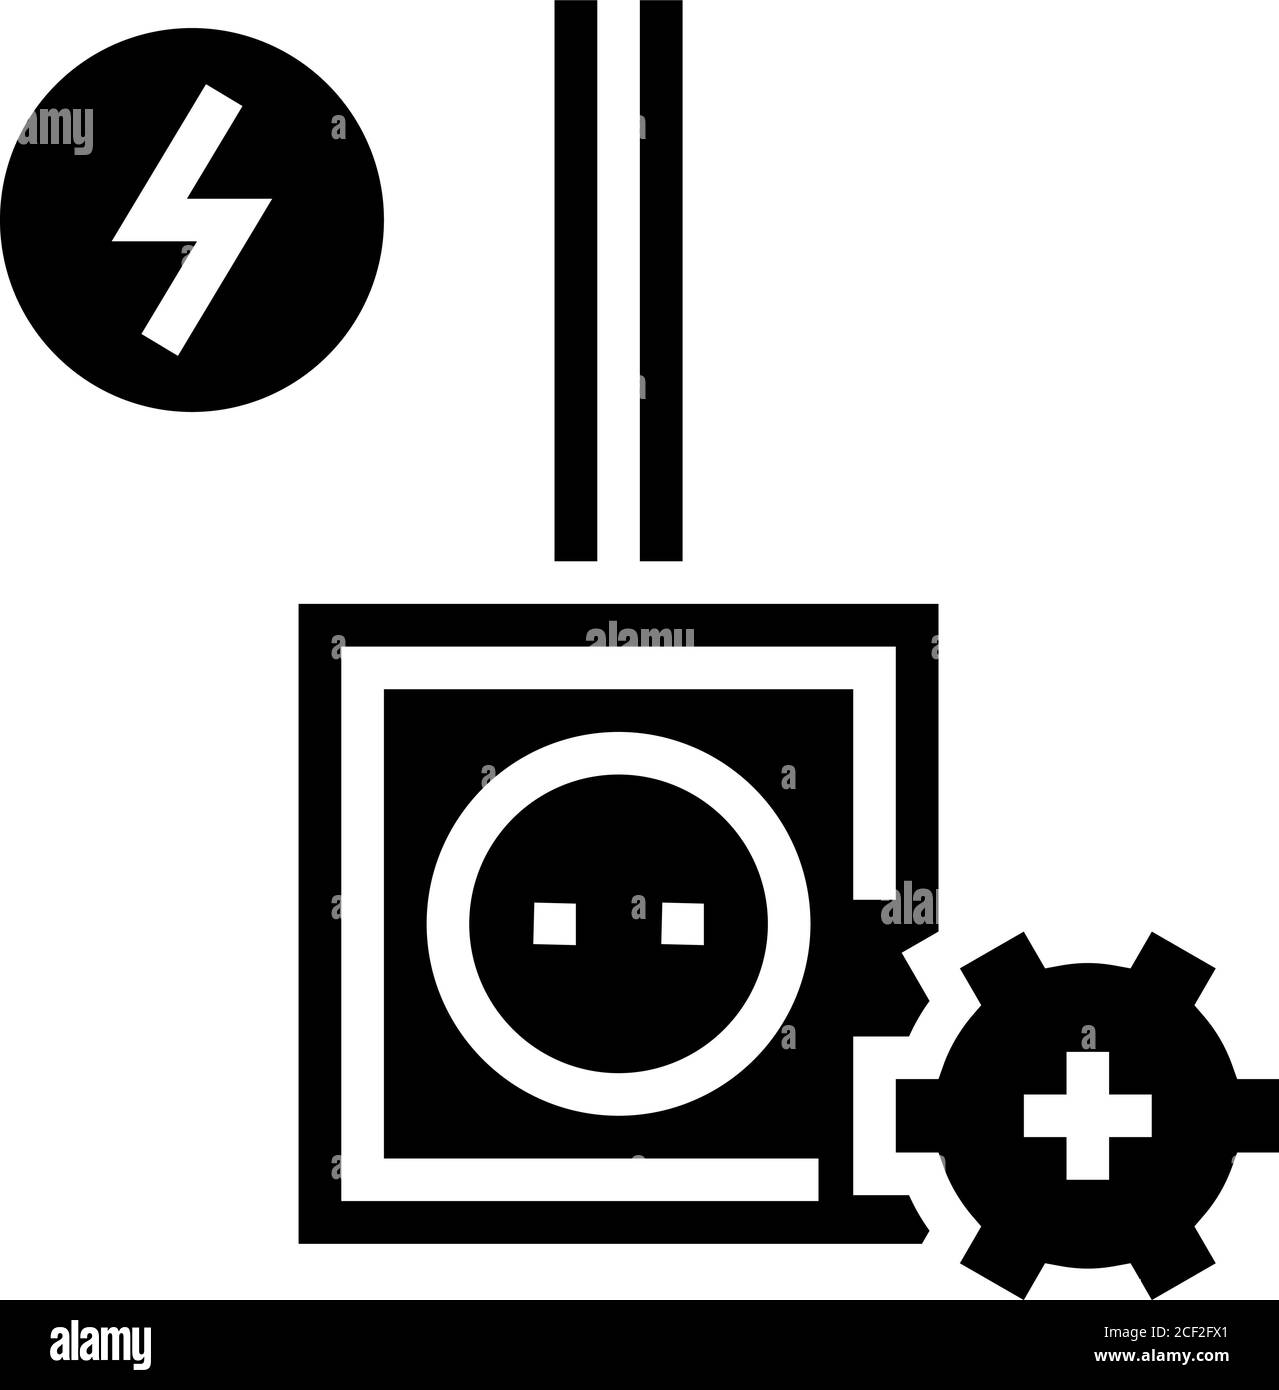 immagine vettoriale dell'icona glifo dell'installazione socket Illustrazione Vettoriale